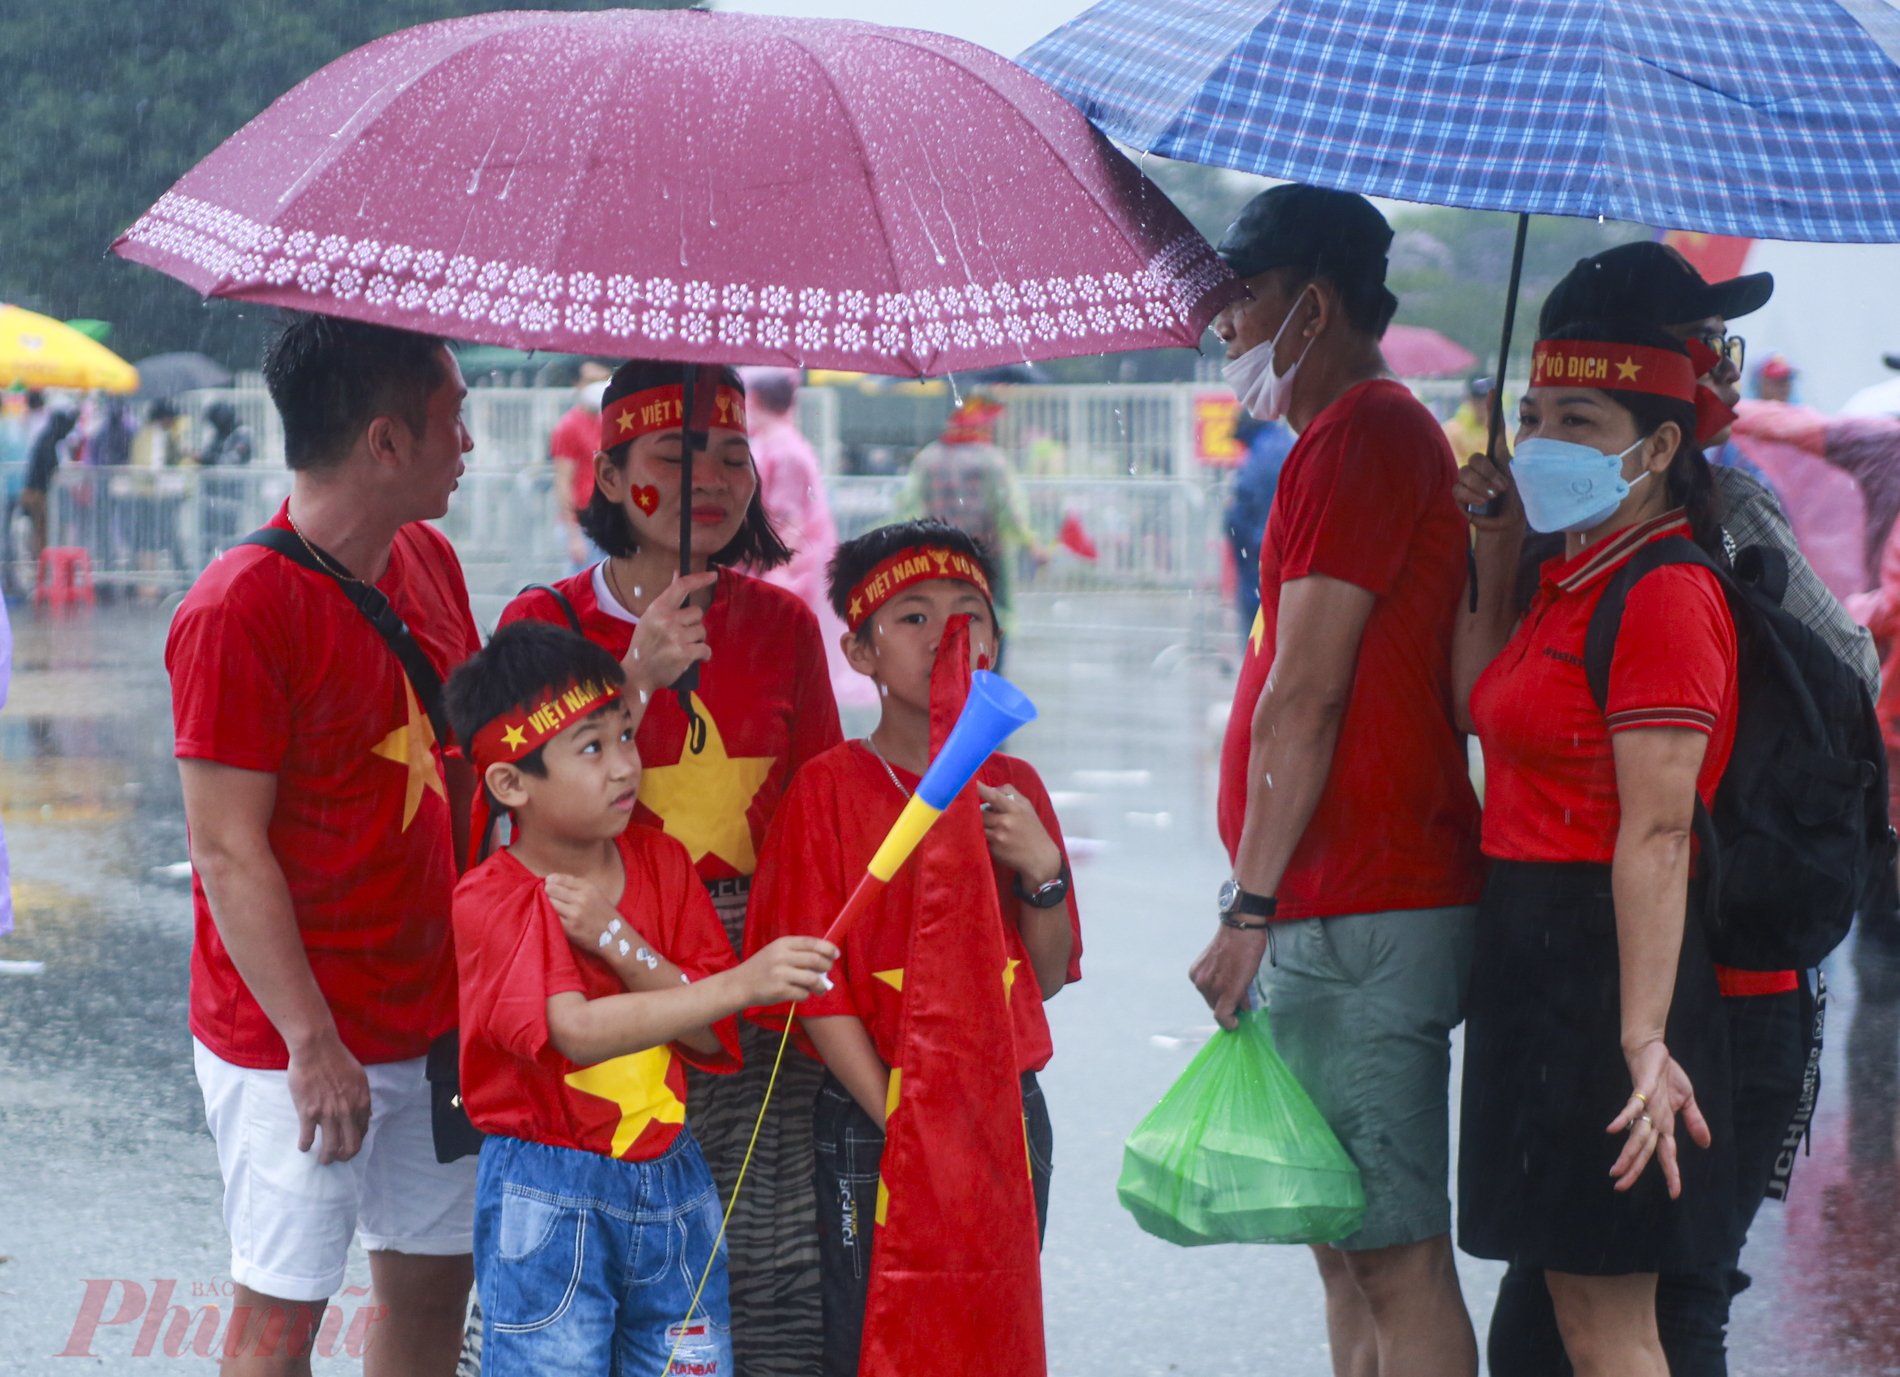 Anh Mạnh Hùng cũng gia đình đã có mặt tại SVĐ Mỹ Đình để cổ vũ cho đội tuyển U23 Việt Nam. Anh Hùng cho biết:' Dù mưa lớn nhưng gia đình tôi vẫn đội mưa tới sân lúc 15h. Hồi hộp mong chờ một trận thắng của đội tuyển Việt Nam trong hôm nay'